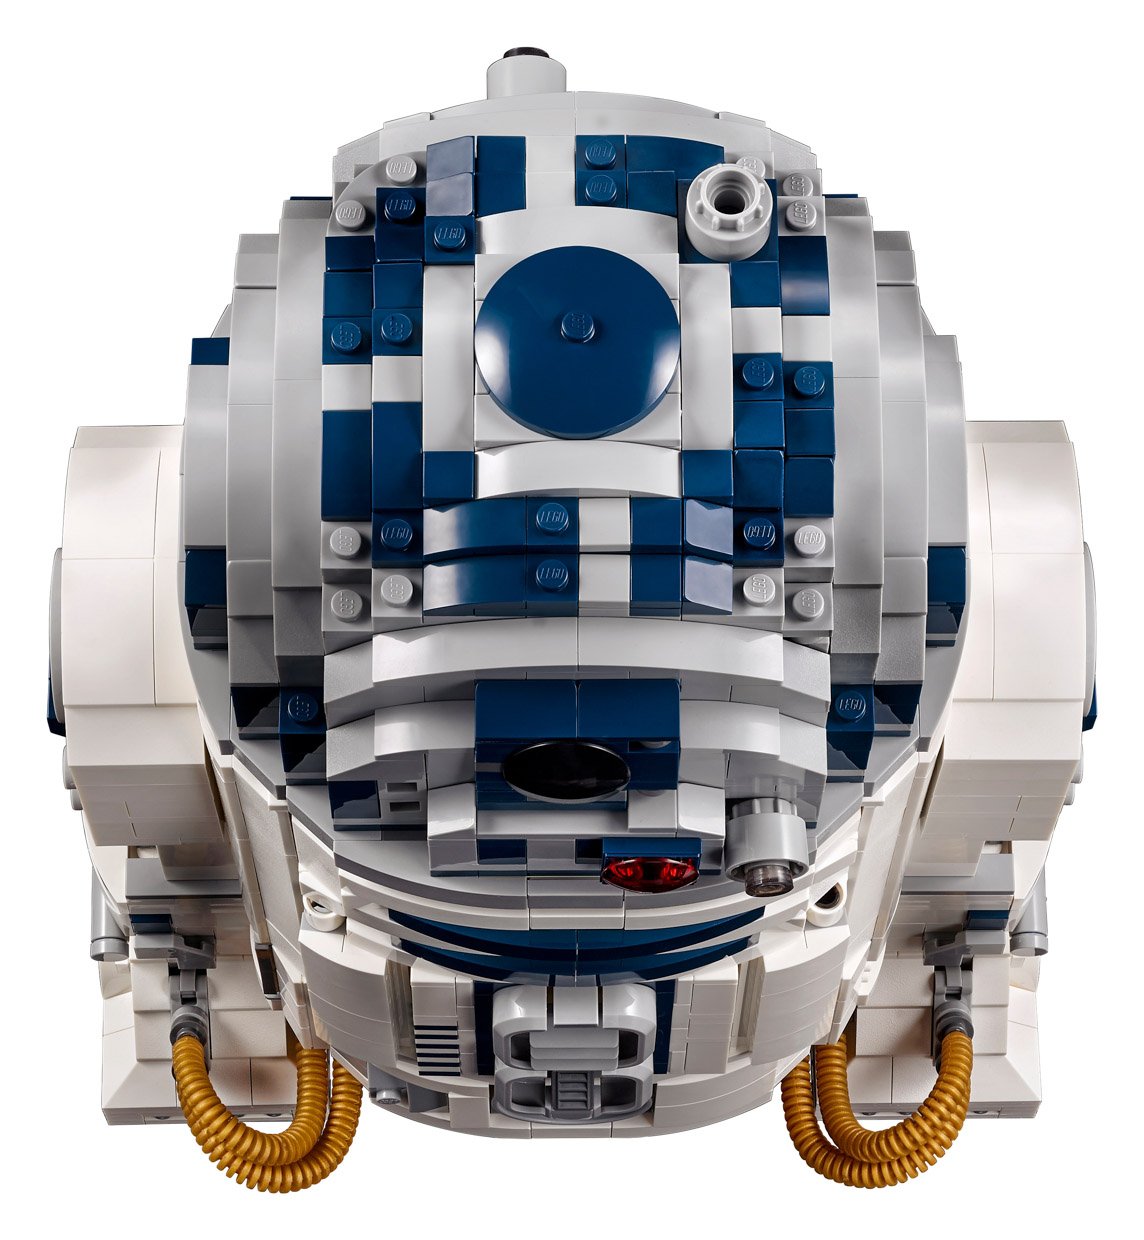 LEGO UCS R2-D2 (2021 Edition)